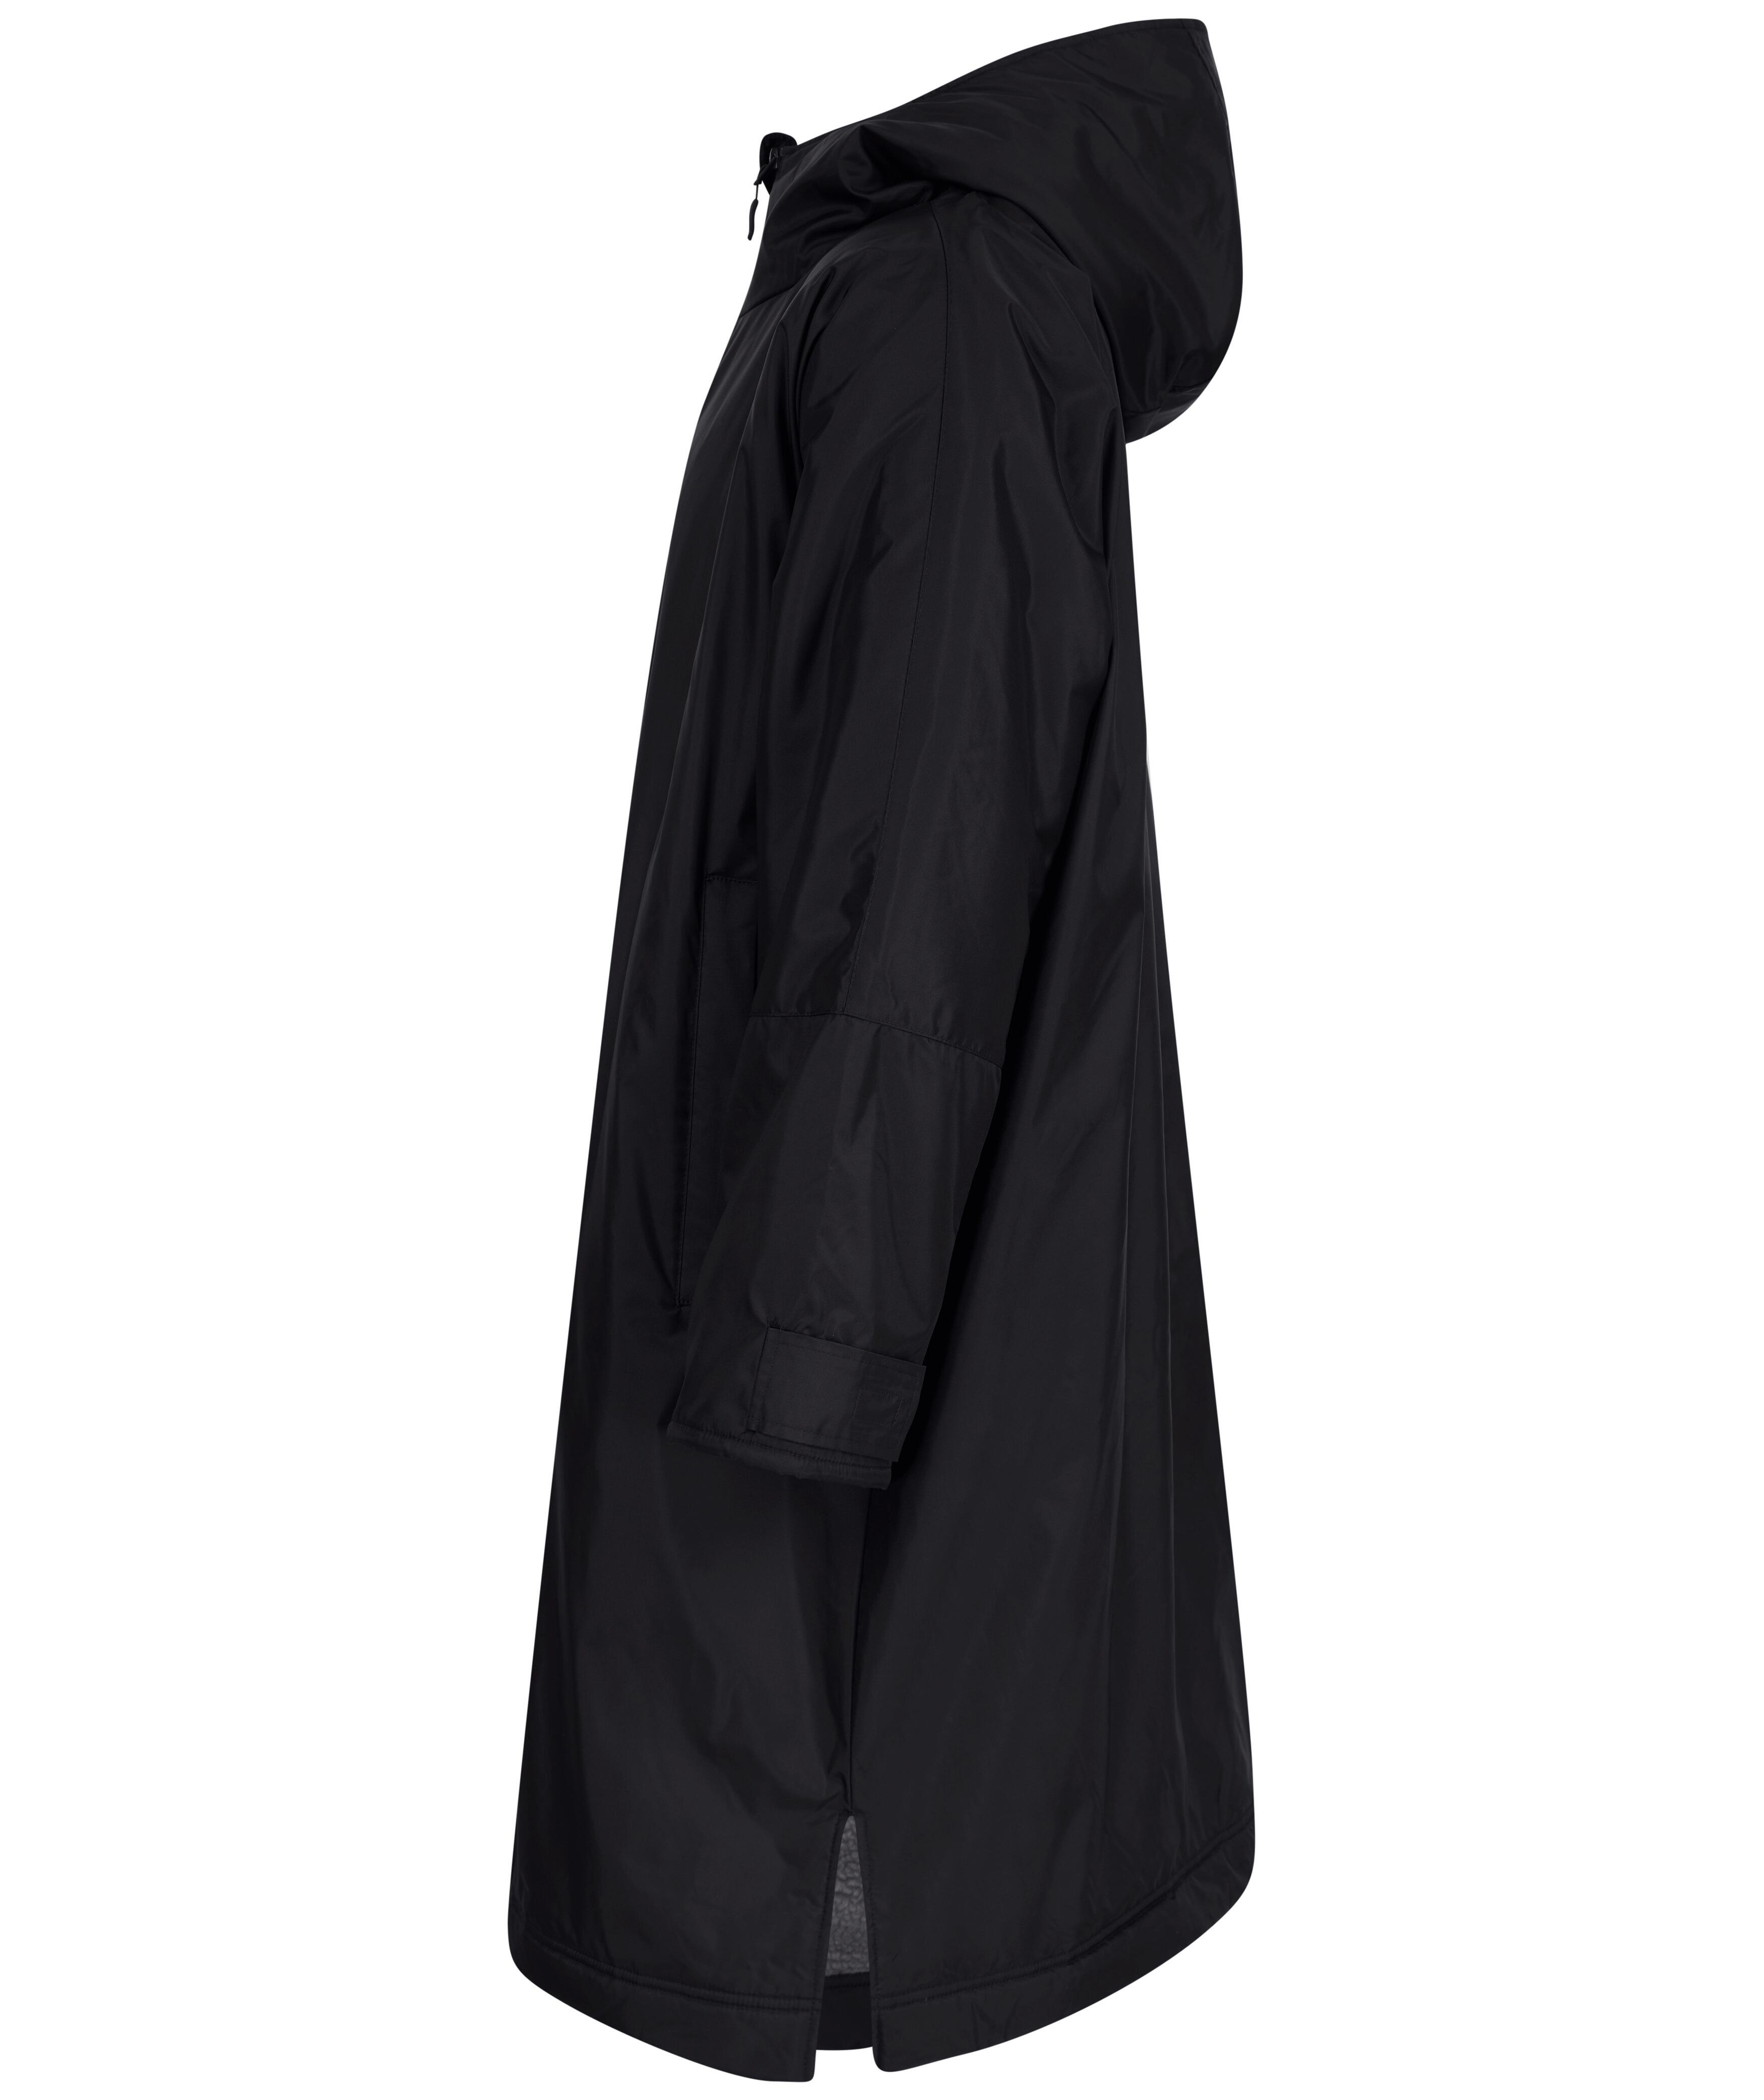 Black All Weather Waterproof Hooded Robe